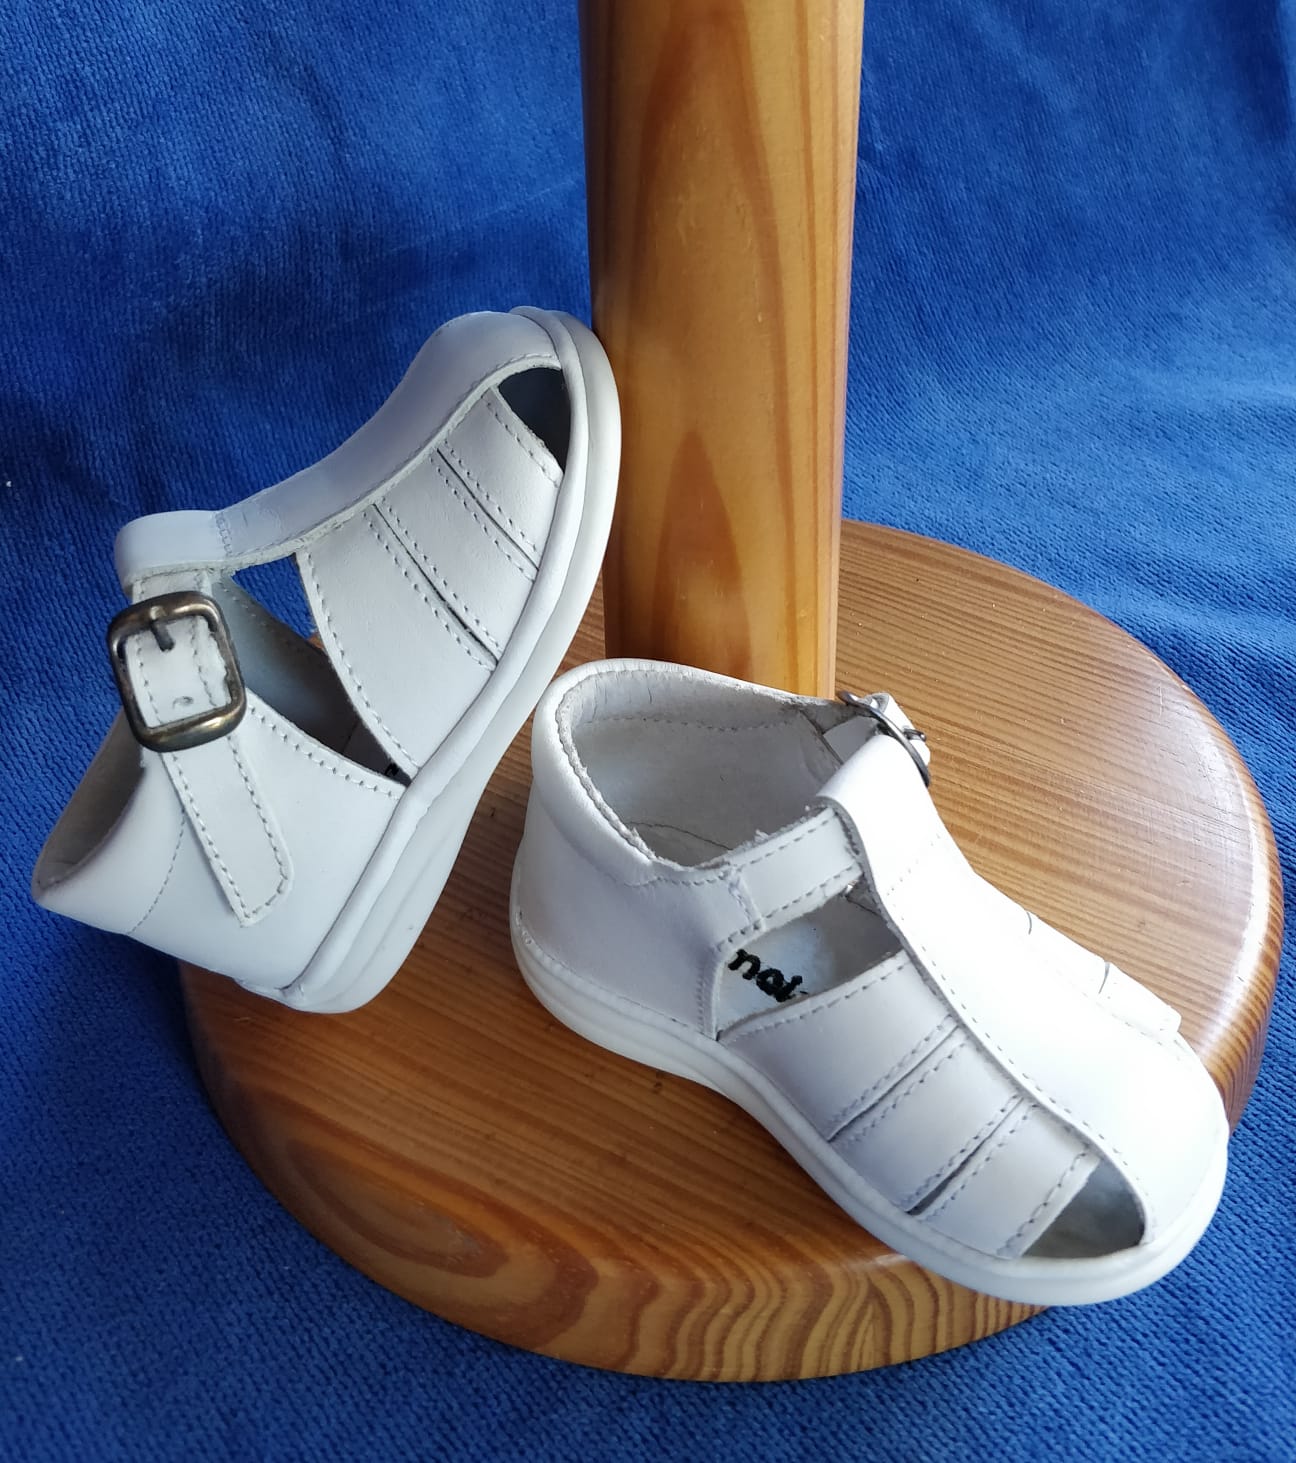 Chaussure sandale pour assortir vos belles tenues de cérémonie - Réf. Sandale - Boutique la Mélinda